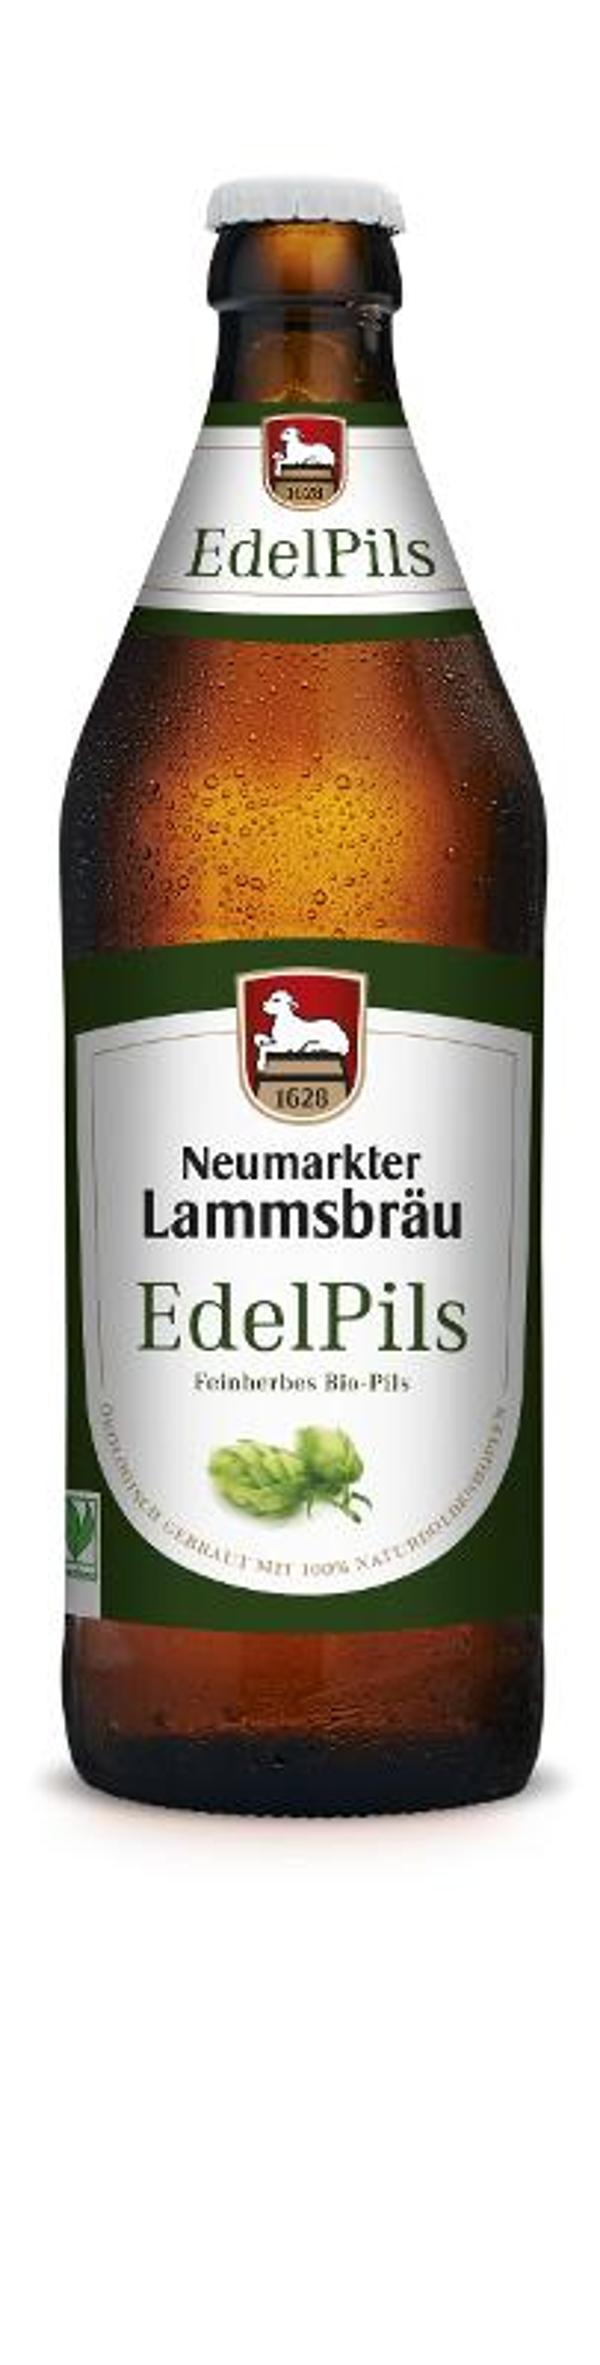 Produktfoto zu Lammsbräu Edelpils